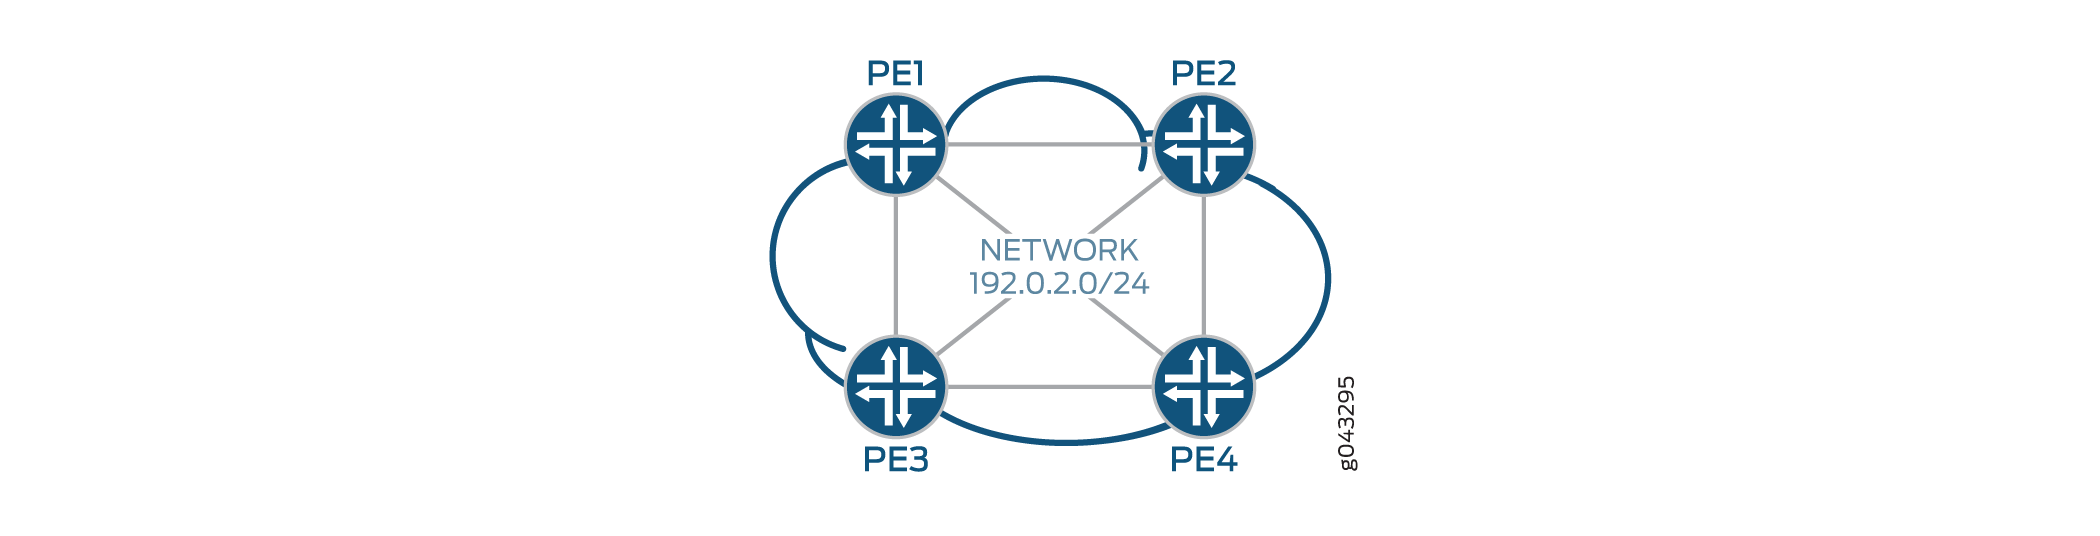 使用 PE 路由器的服务提供商网络